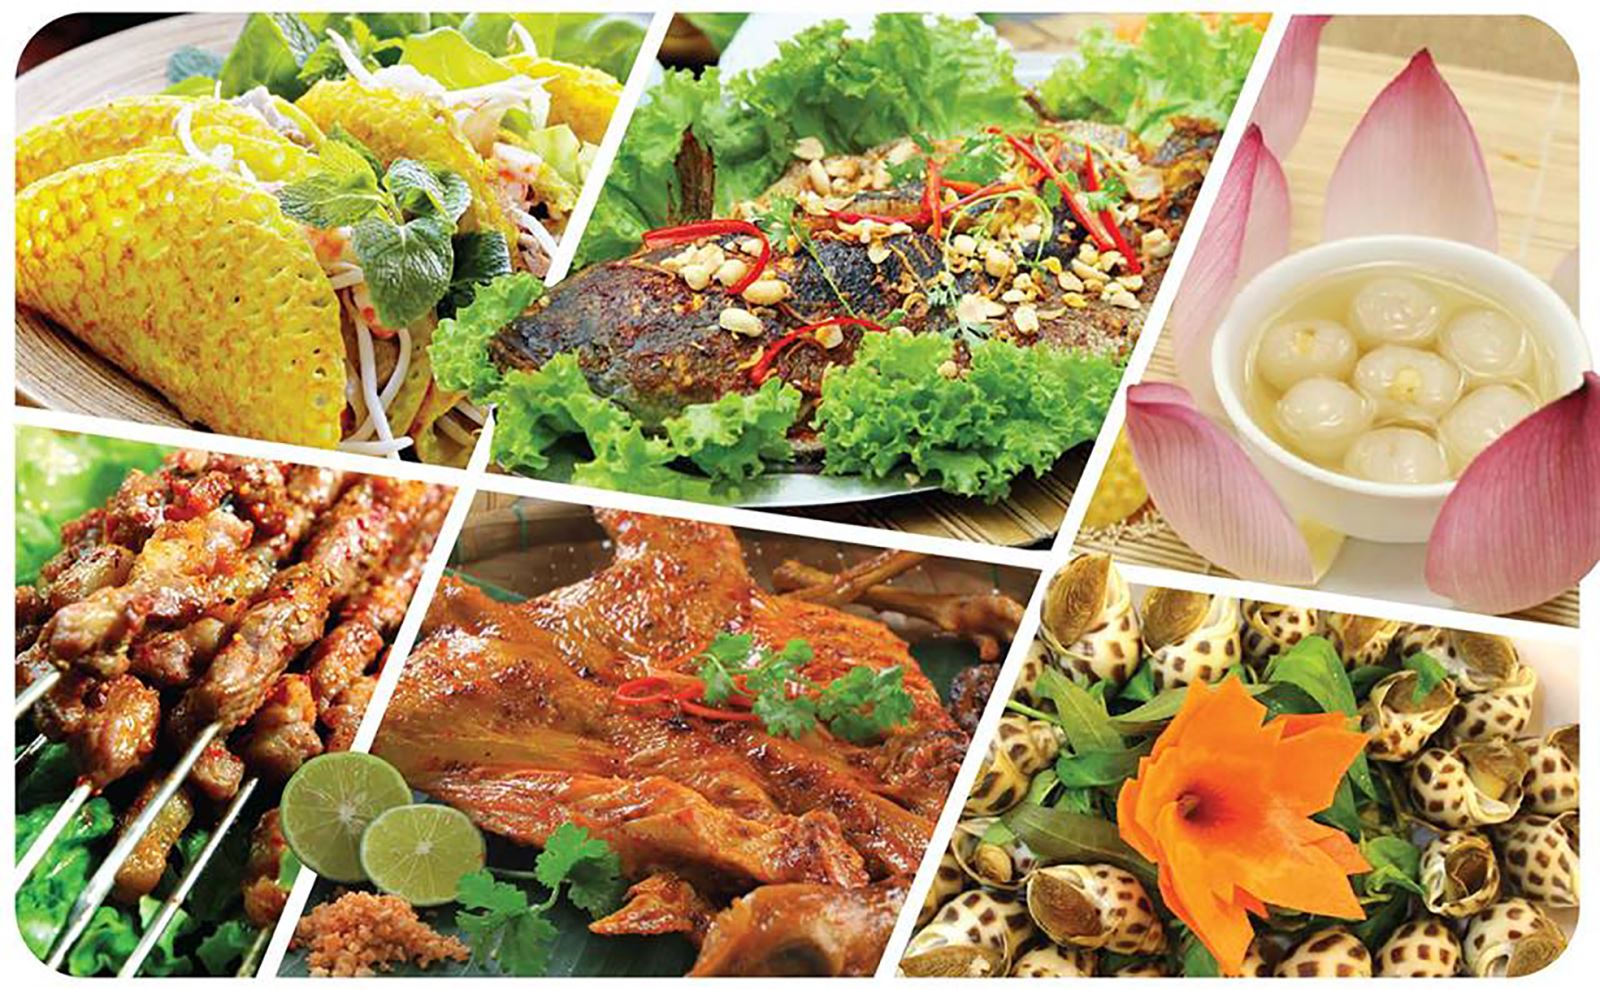 Văn hóa ẩm thực trong các món ăn Nam Bộ